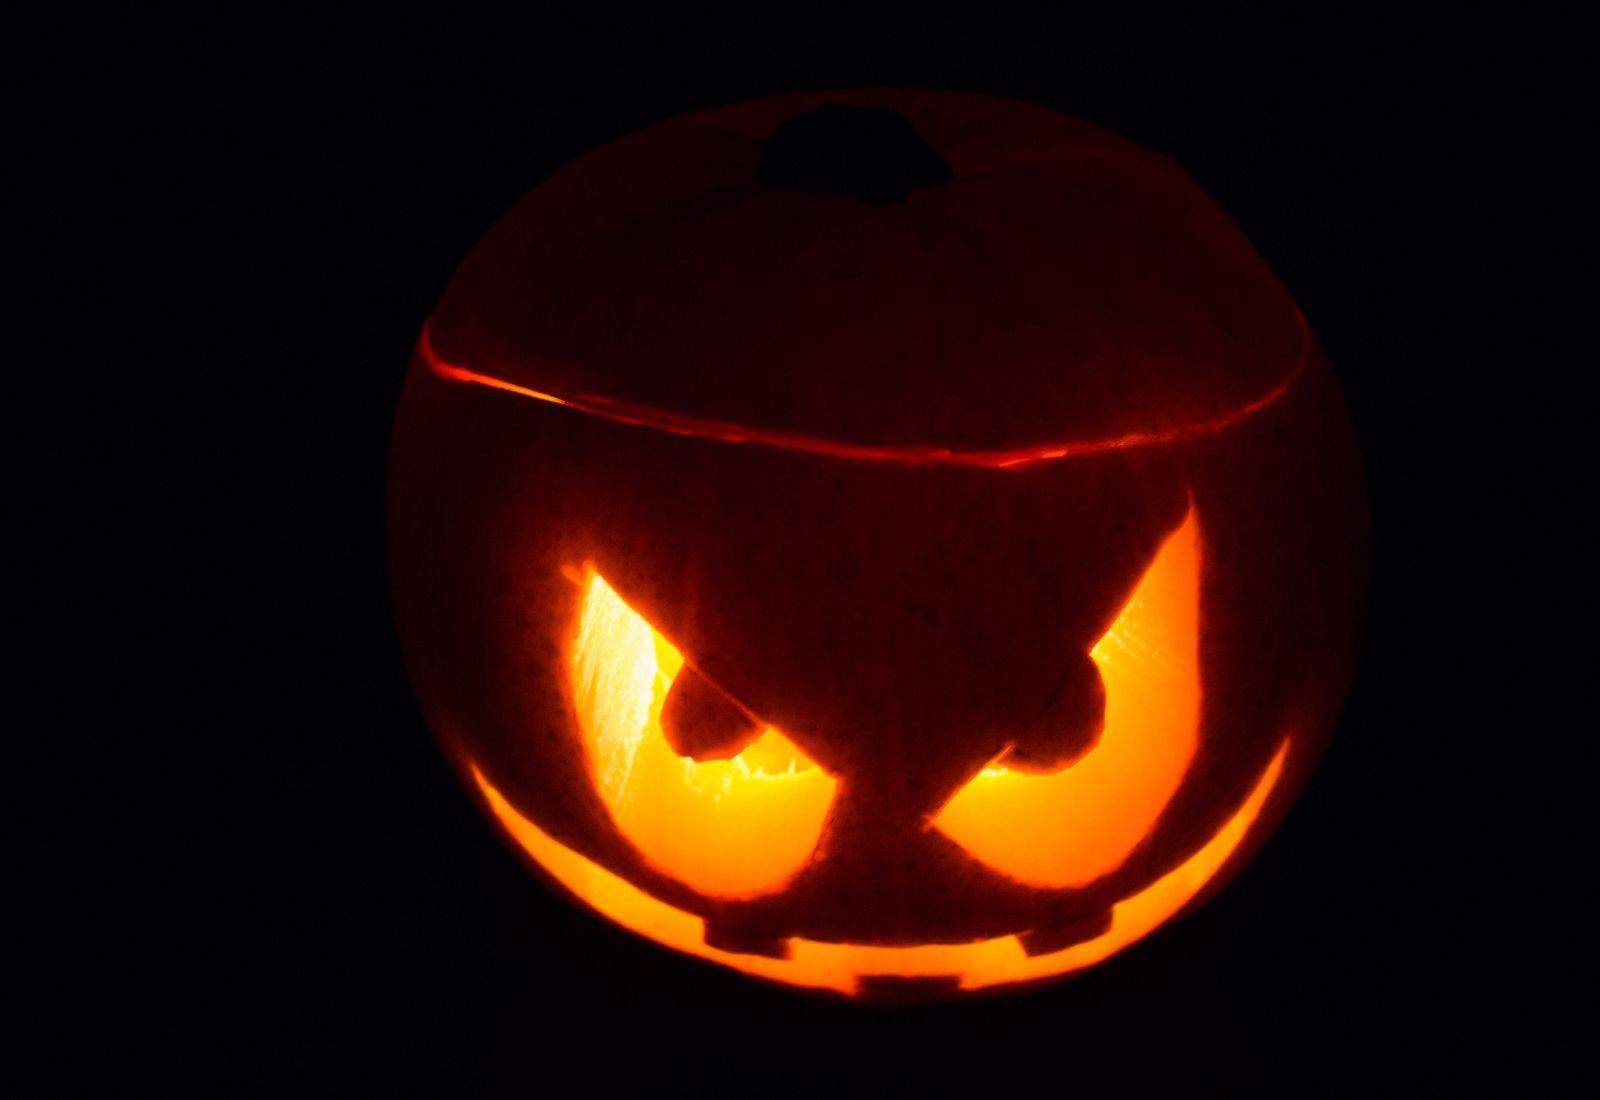 Scary jack-o-lantern face carving - evil eyes